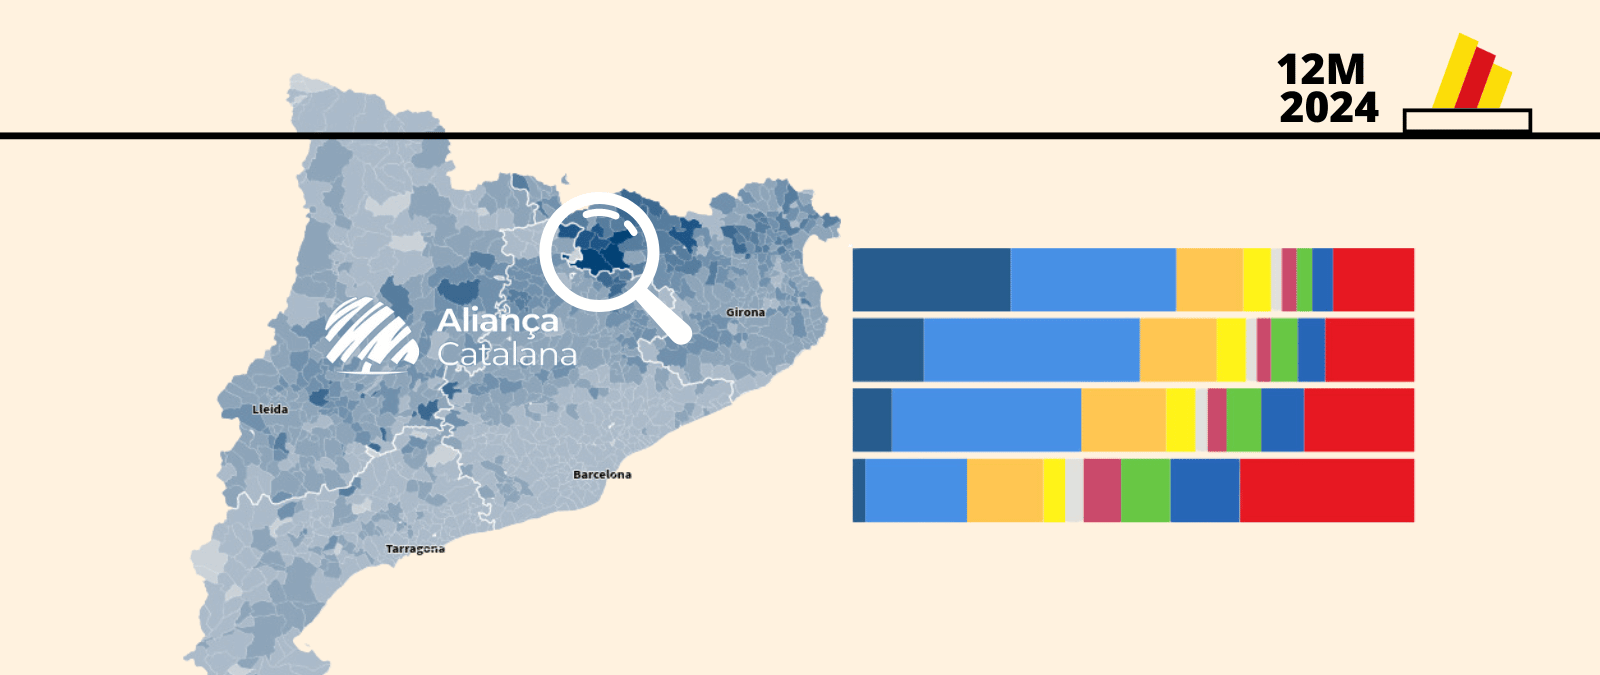 Dónde se impone Aliança Catalana y qué partidos ganaron allí en las anteriores elecciones